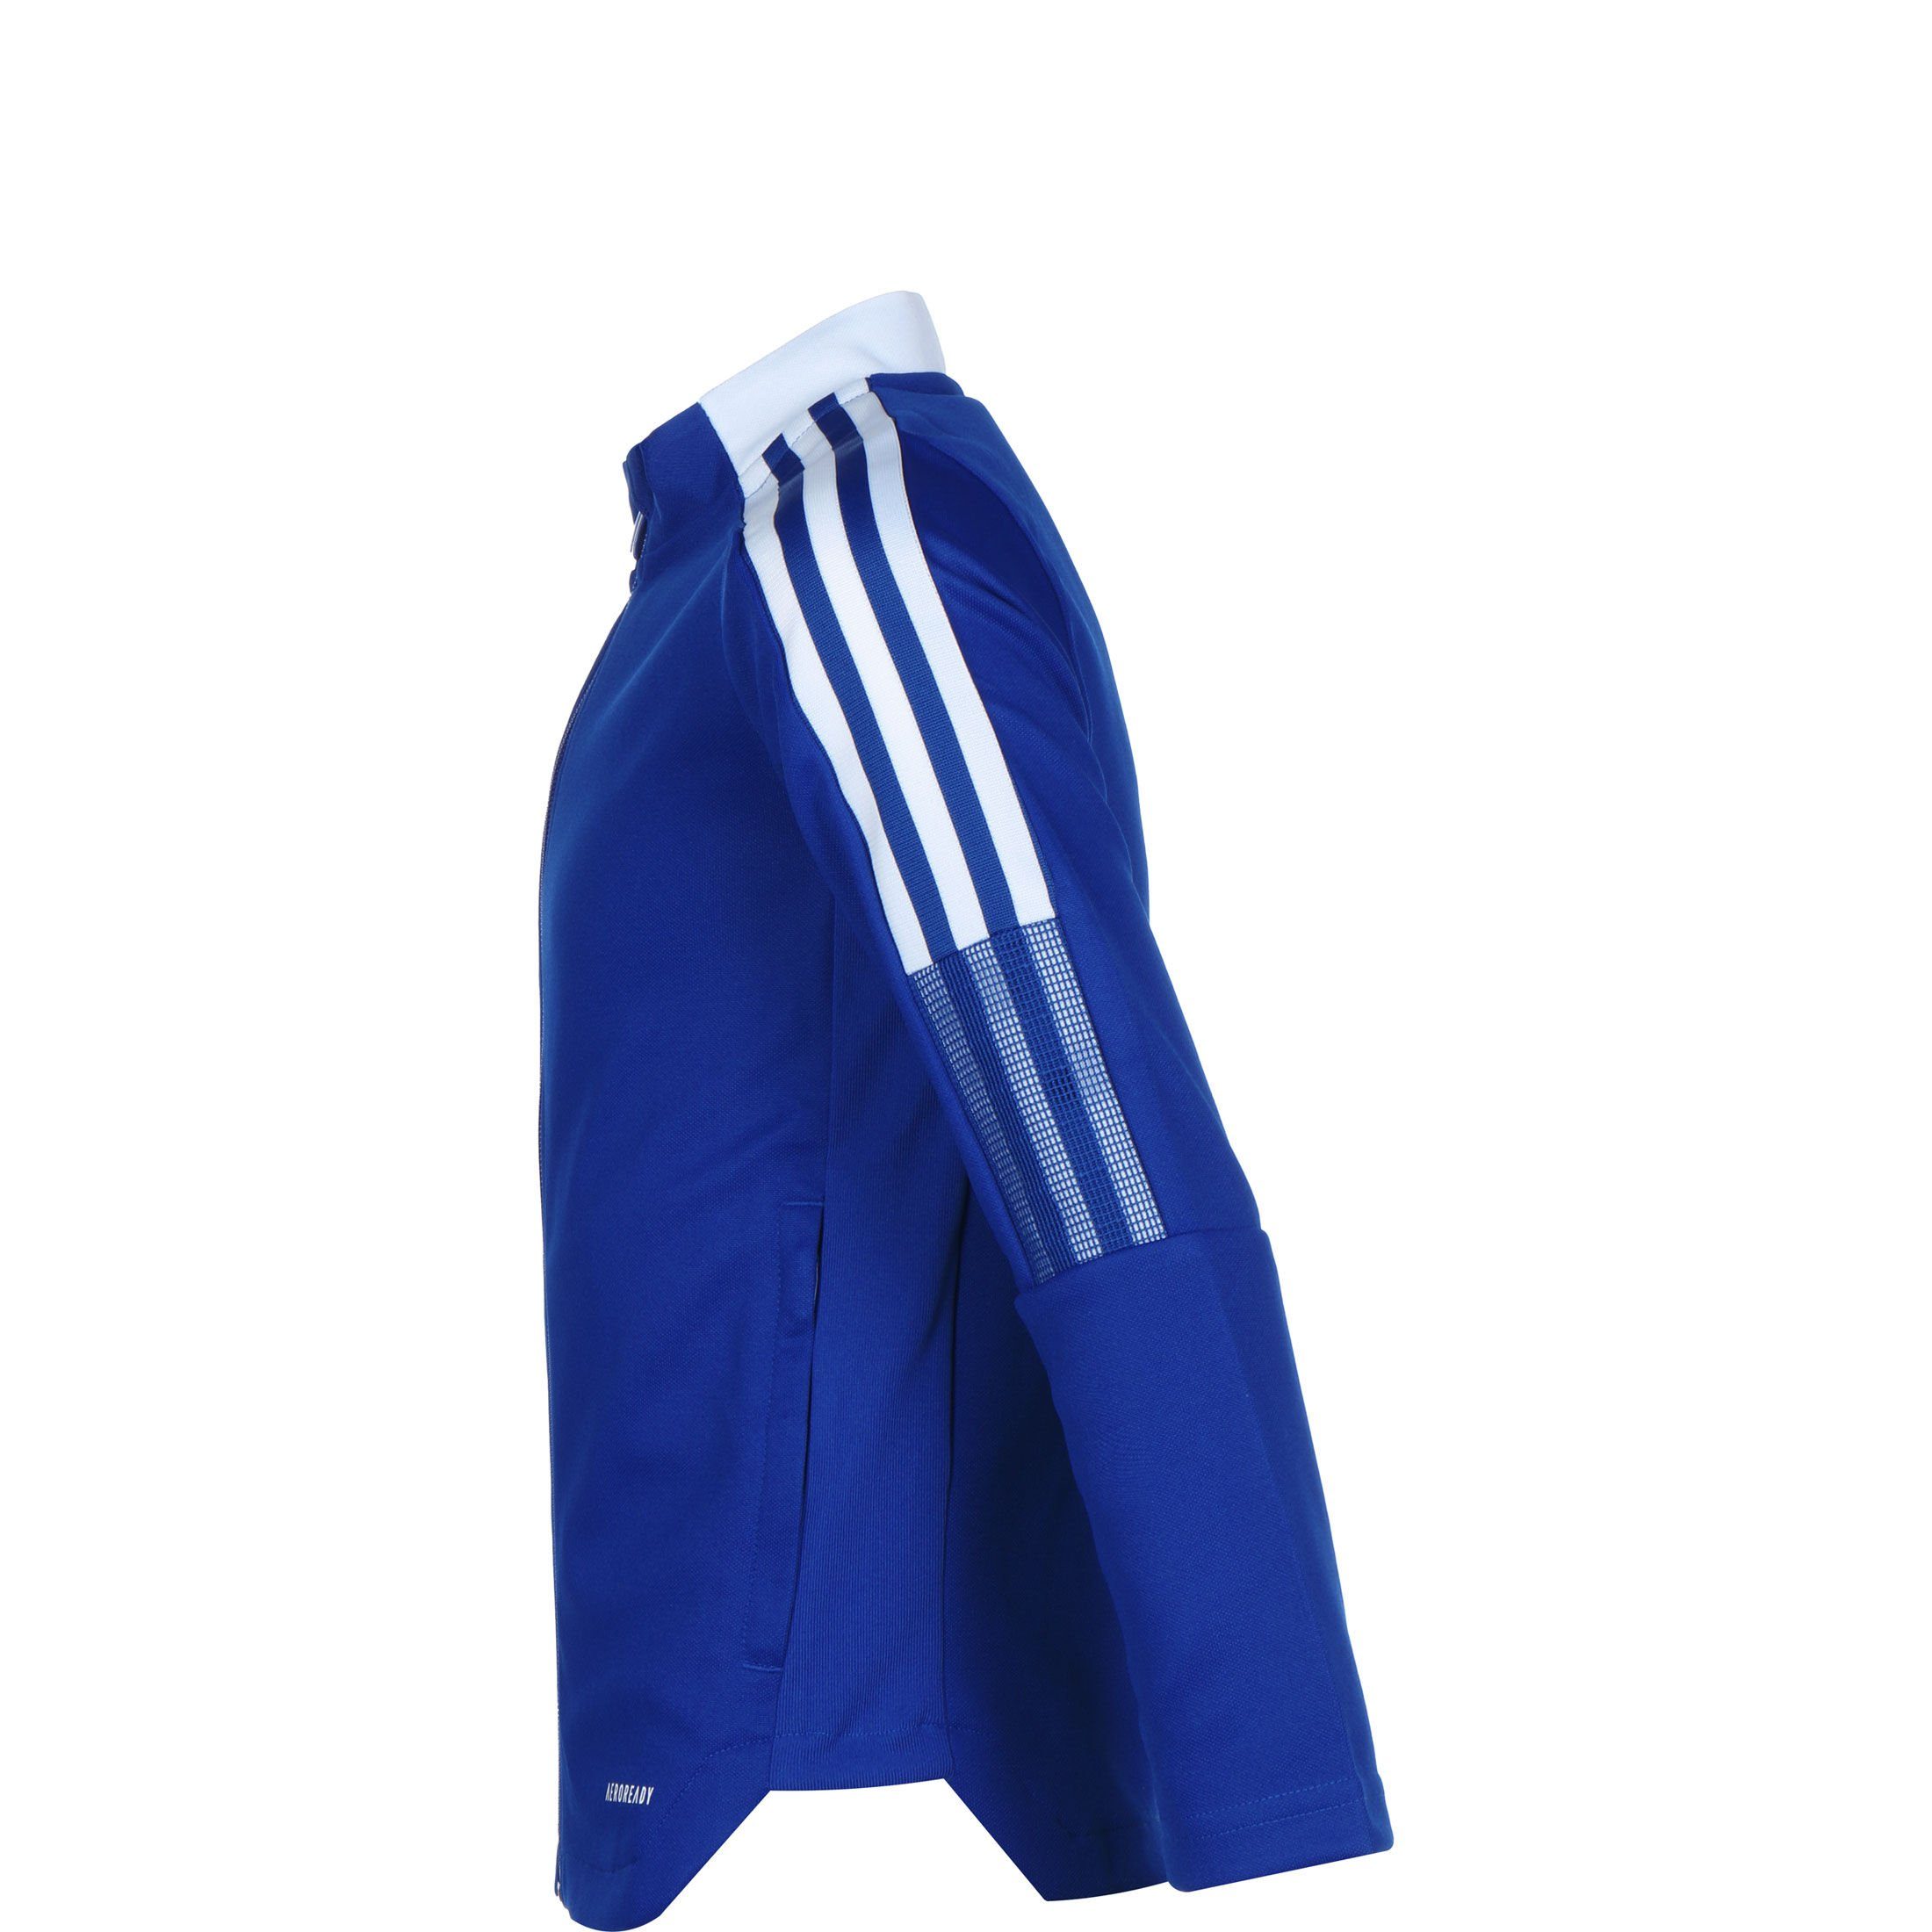 21 adidas Performance blau Tiro / Trainingsjacke weiß Sweatjacke Kinder